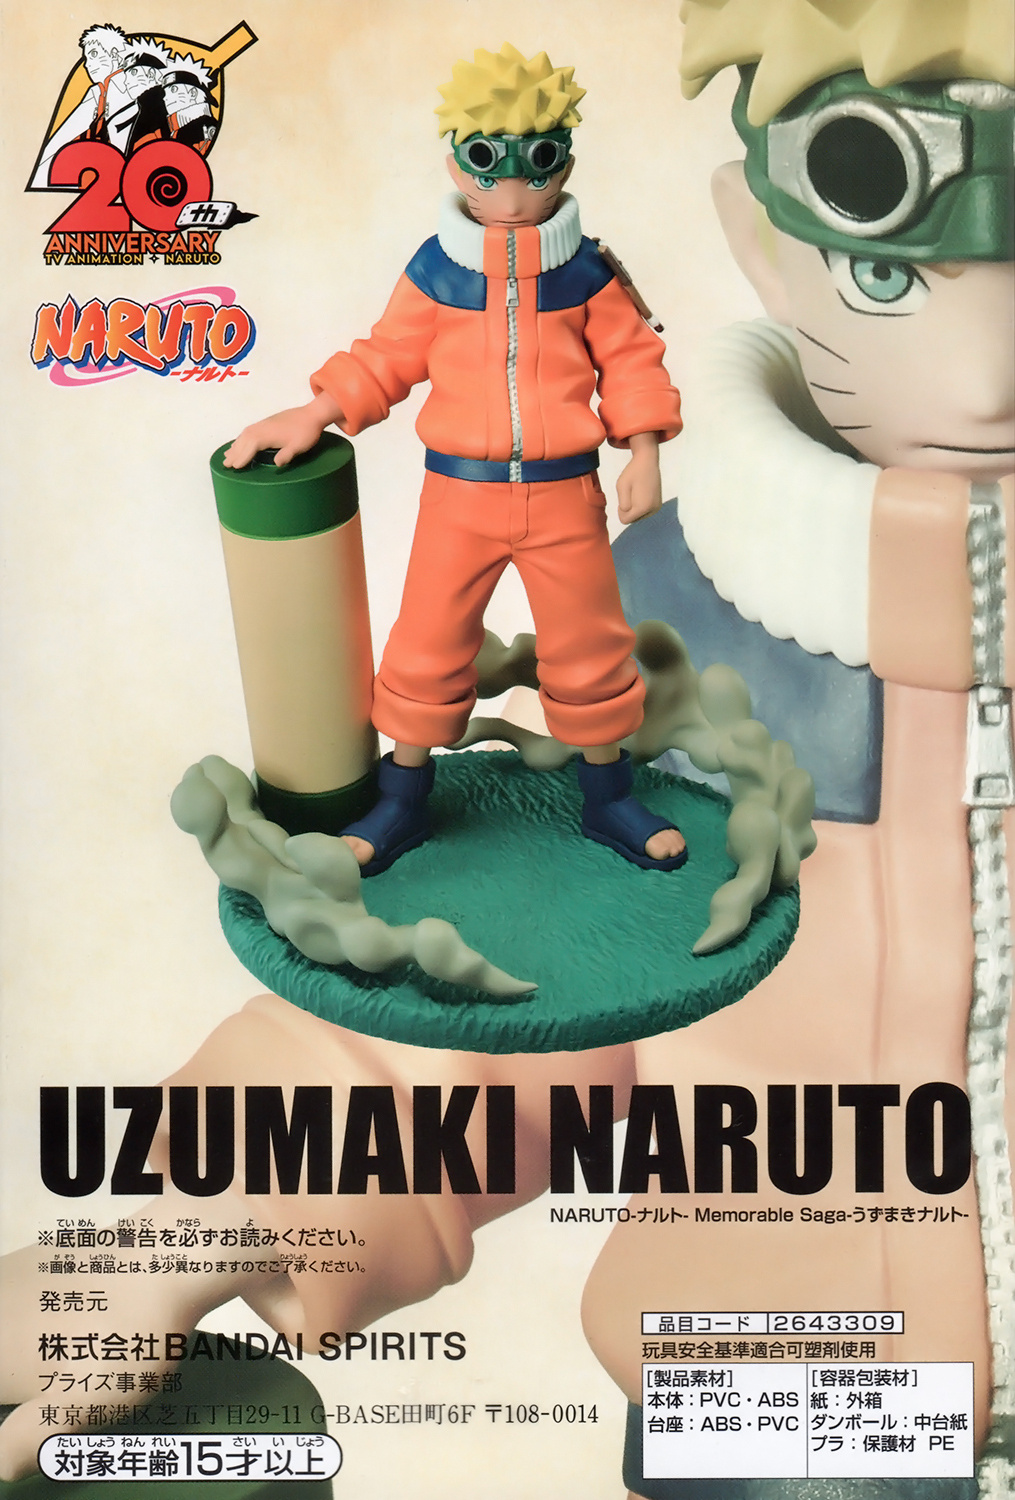 Naruto - Uzumaki Naruto - Memorable Saga -ONLYFIGURE